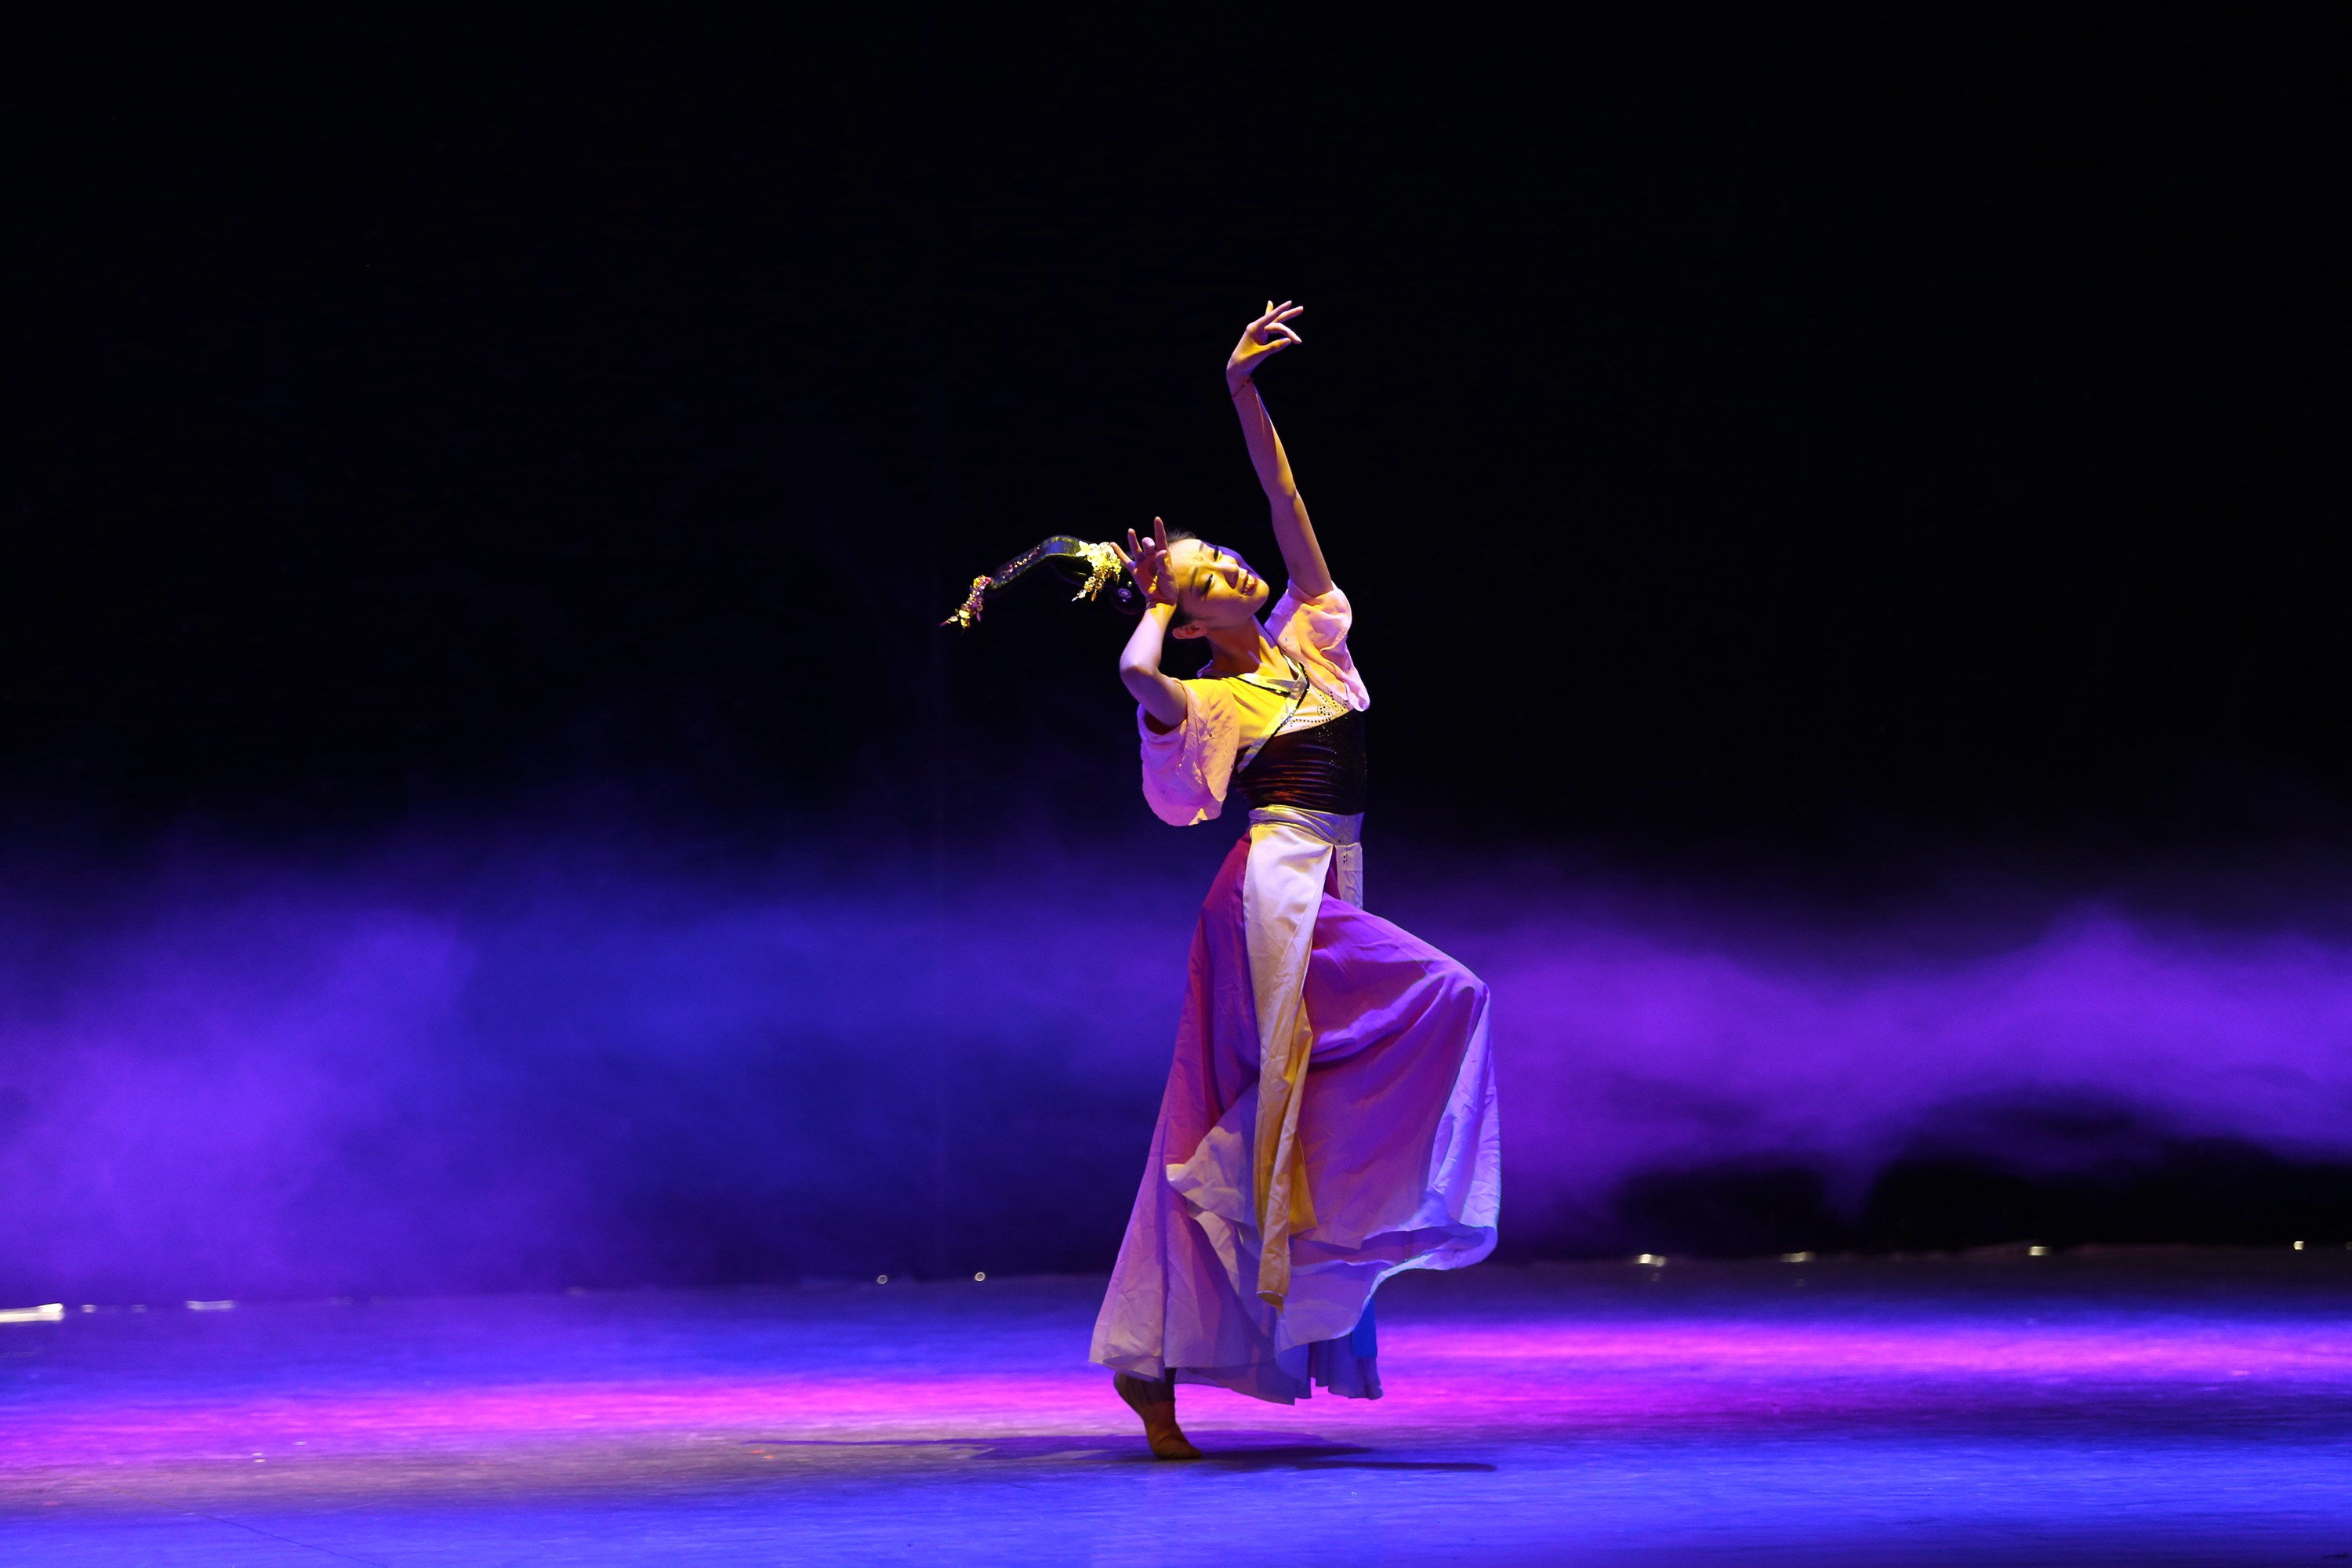 演出形式有独舞,双人舞,群舞,舞蹈种类有芭蕾舞,民族舞,现代舞等